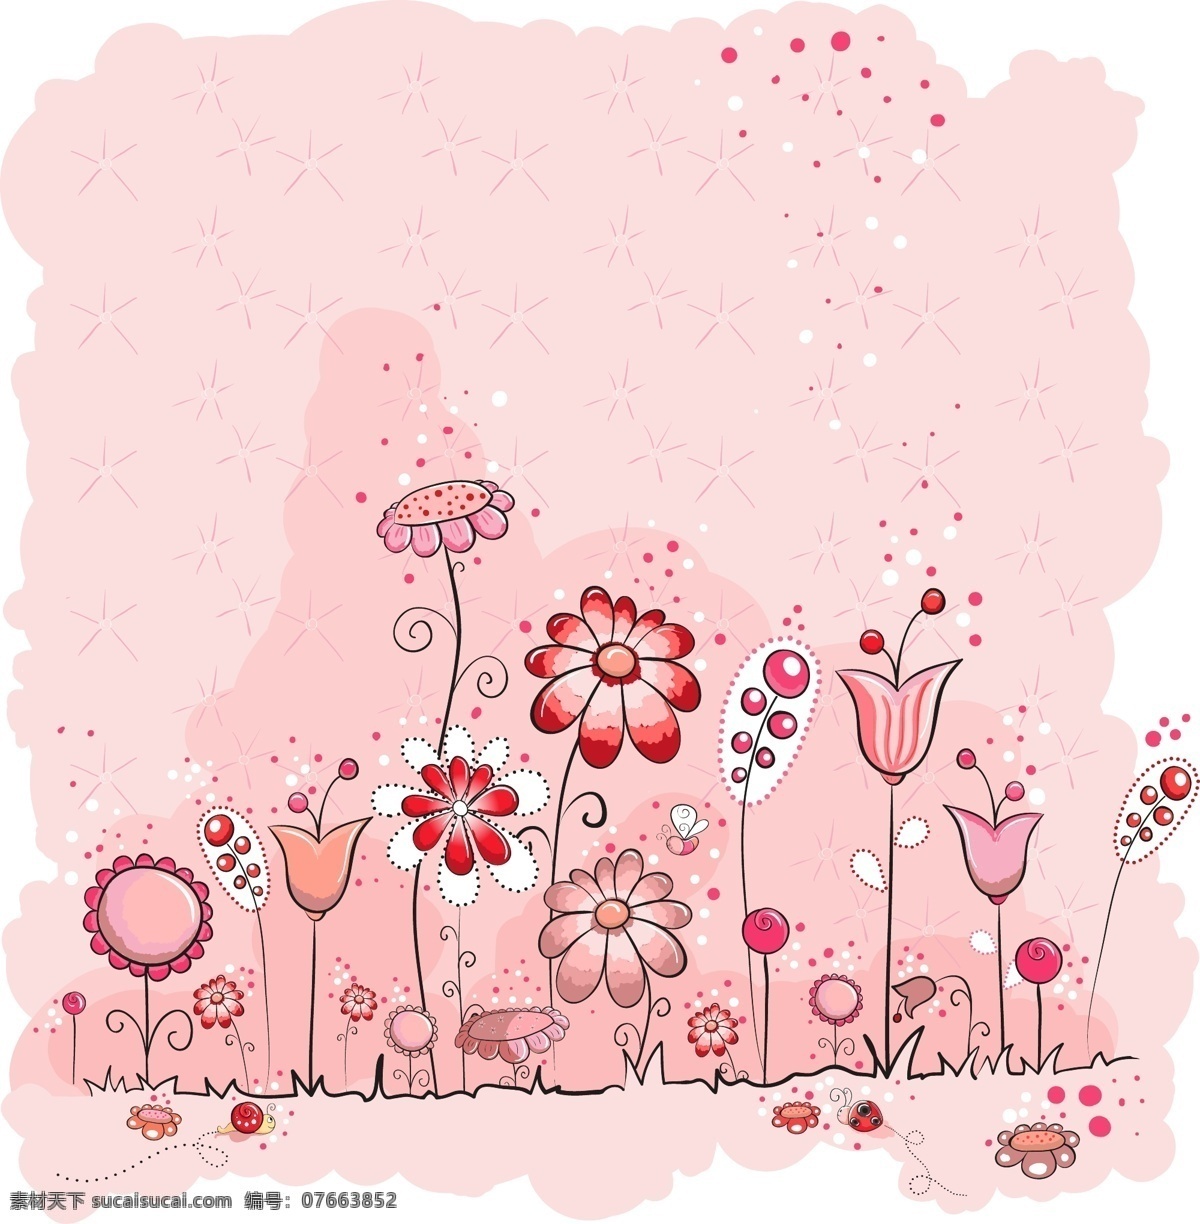 粉色 风格 孩子 卡 矢量图 粉红 花 向量卡 名片卡 广告设计名片